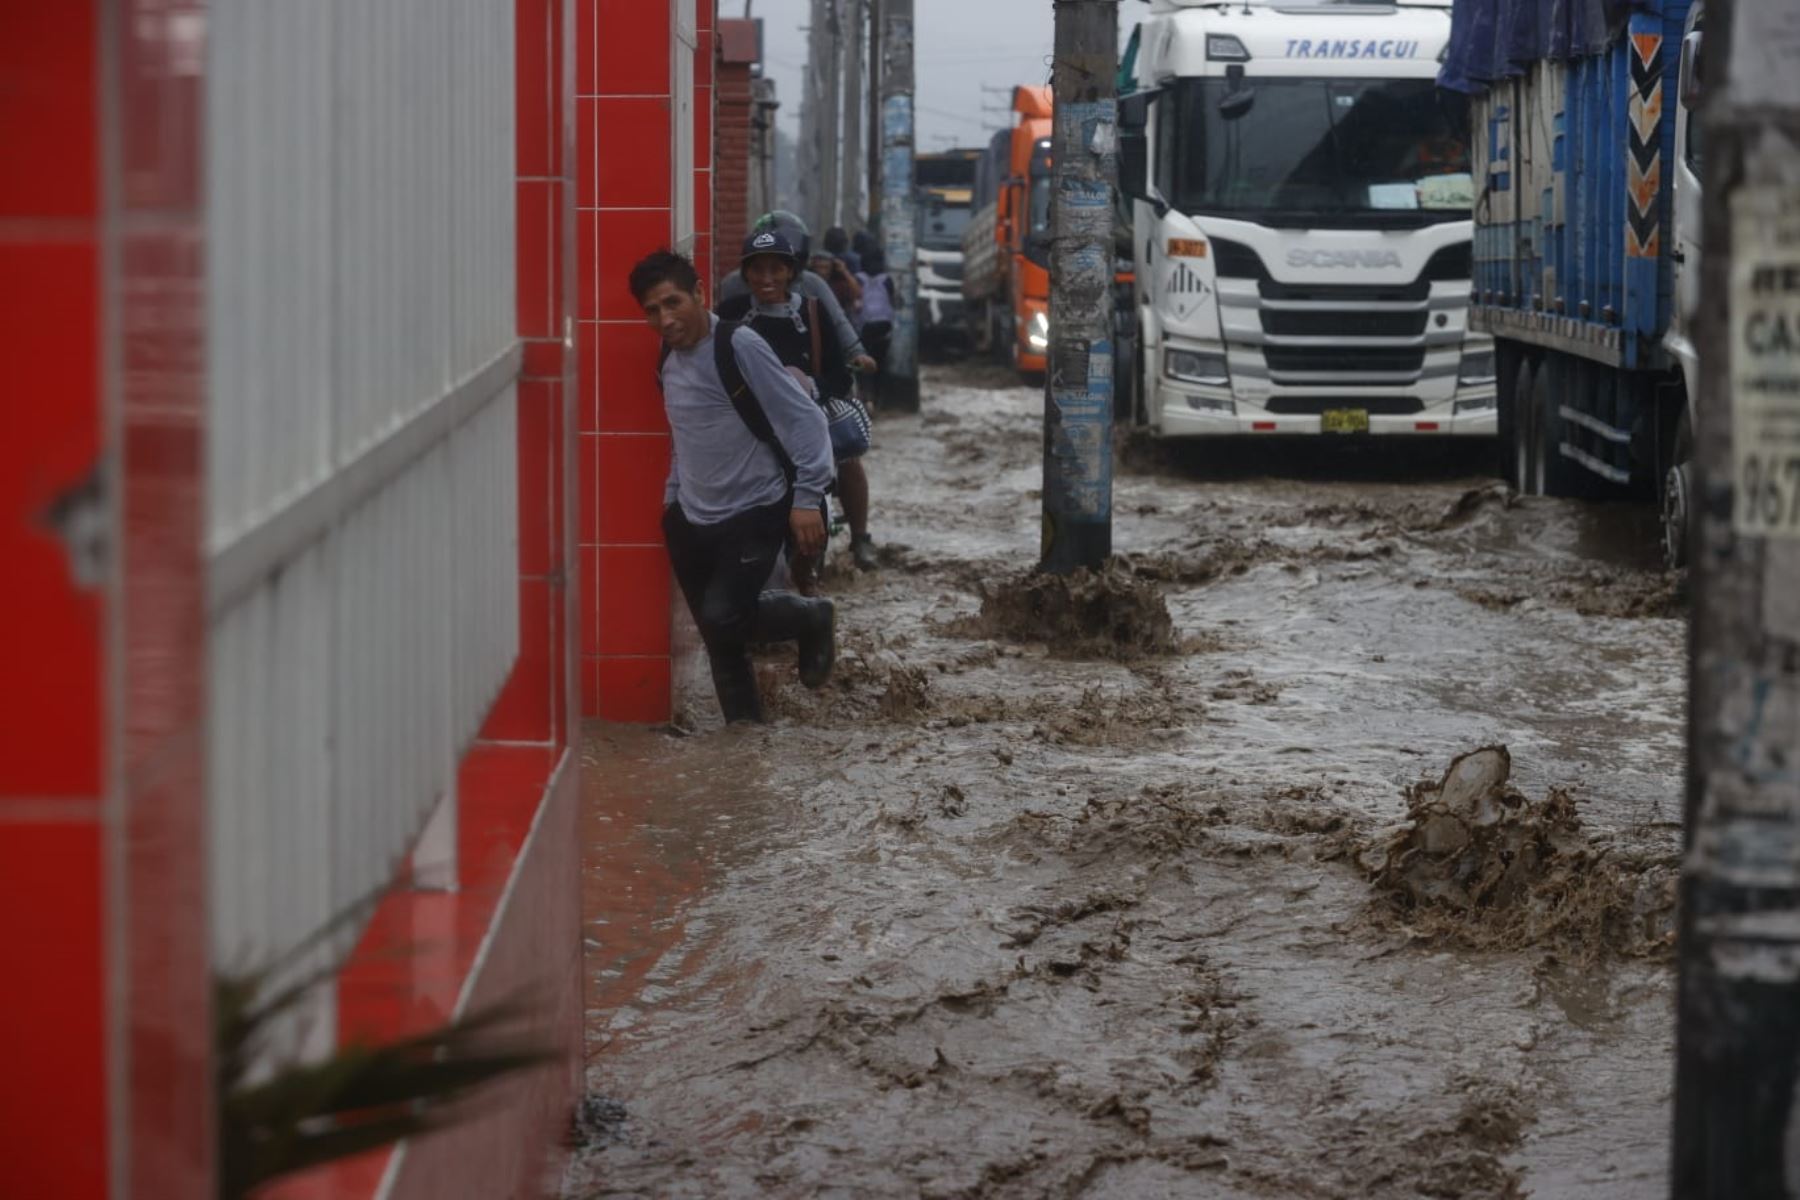 Las lluvias de fuerte intensidad en Chaclacayo han generado la crecida de quebradas cercanas al distrito, destruyendo todo a su paso, incluidas las pistas que terminaron rotas. (Andina)